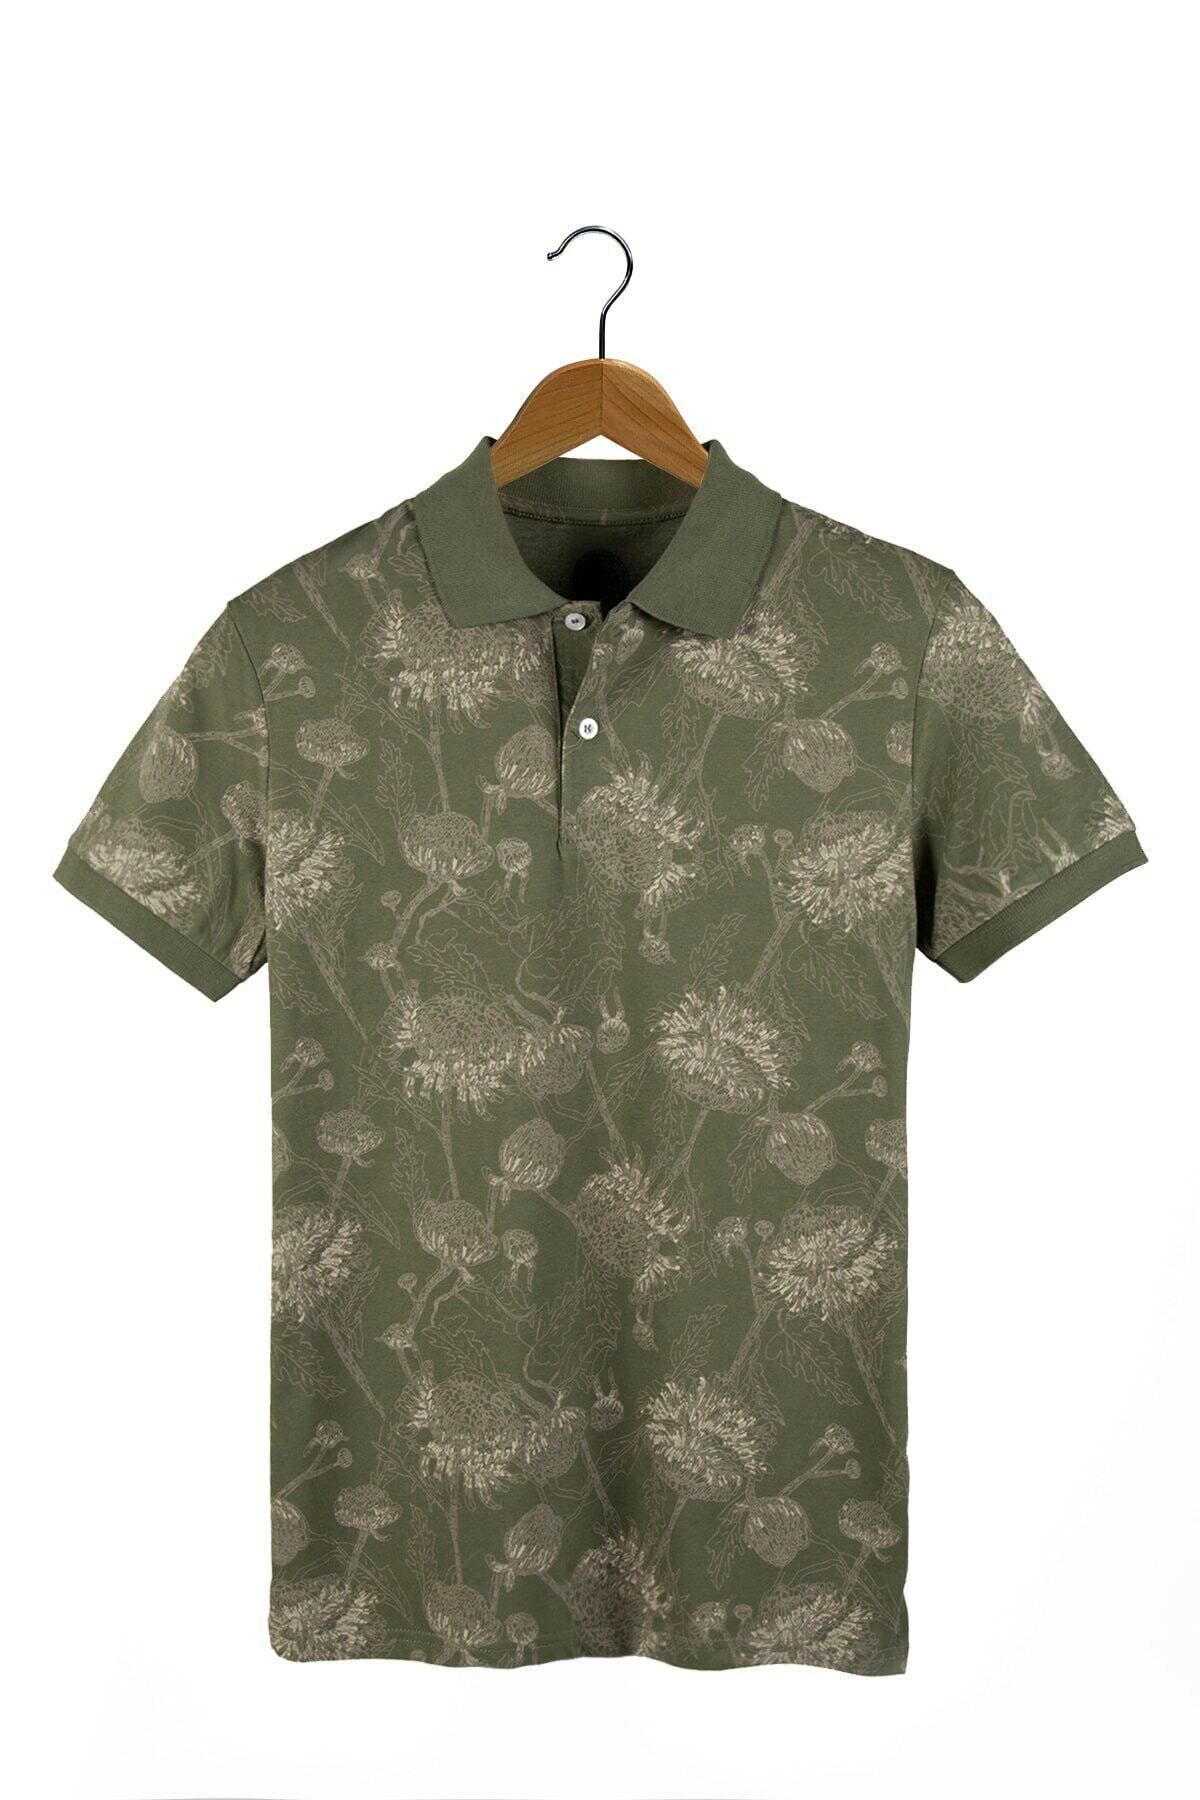 VEAVEN Erkek Yeşil Desenli Polo Yaka T-shirt